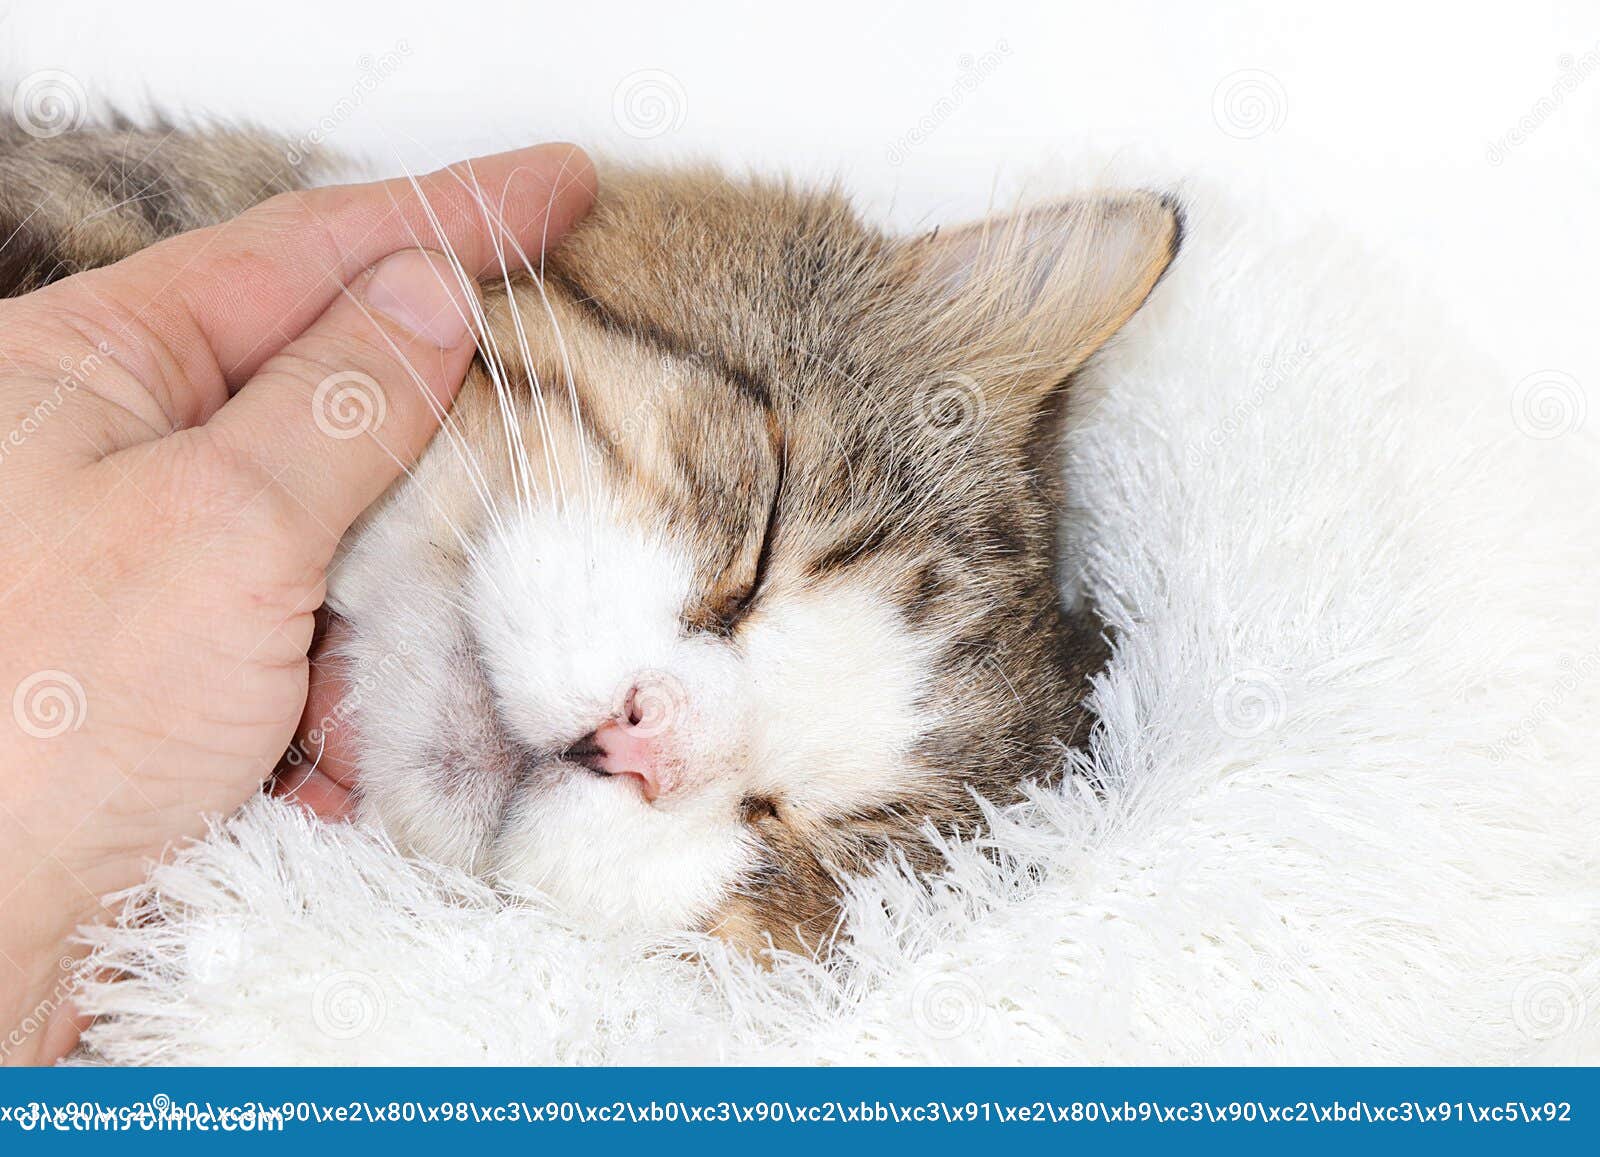 猫咪的特写是一只睡猫 一只舒适的院子猫在家中发现了友谊和爱宠物的概念库存图片 图片包括有表达式 题头